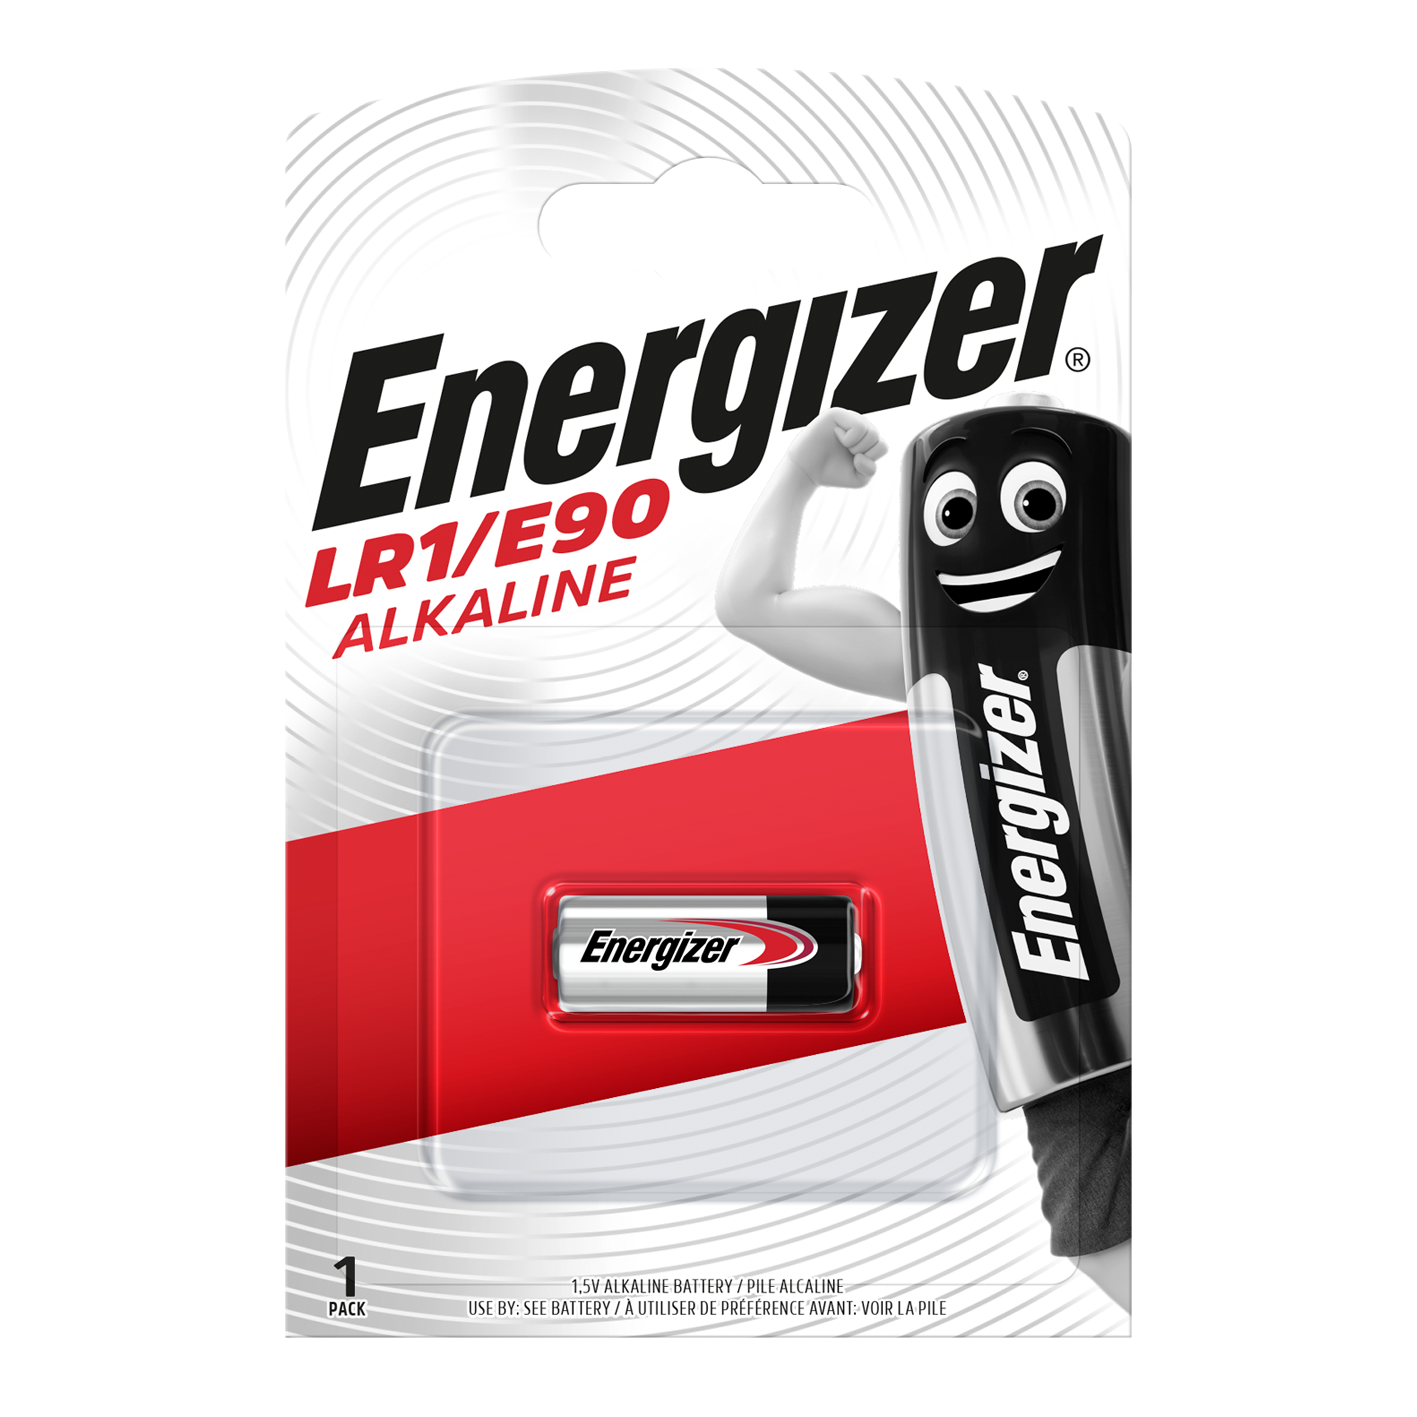 Energizer LR1/E90 Alkaline, Pack of 1